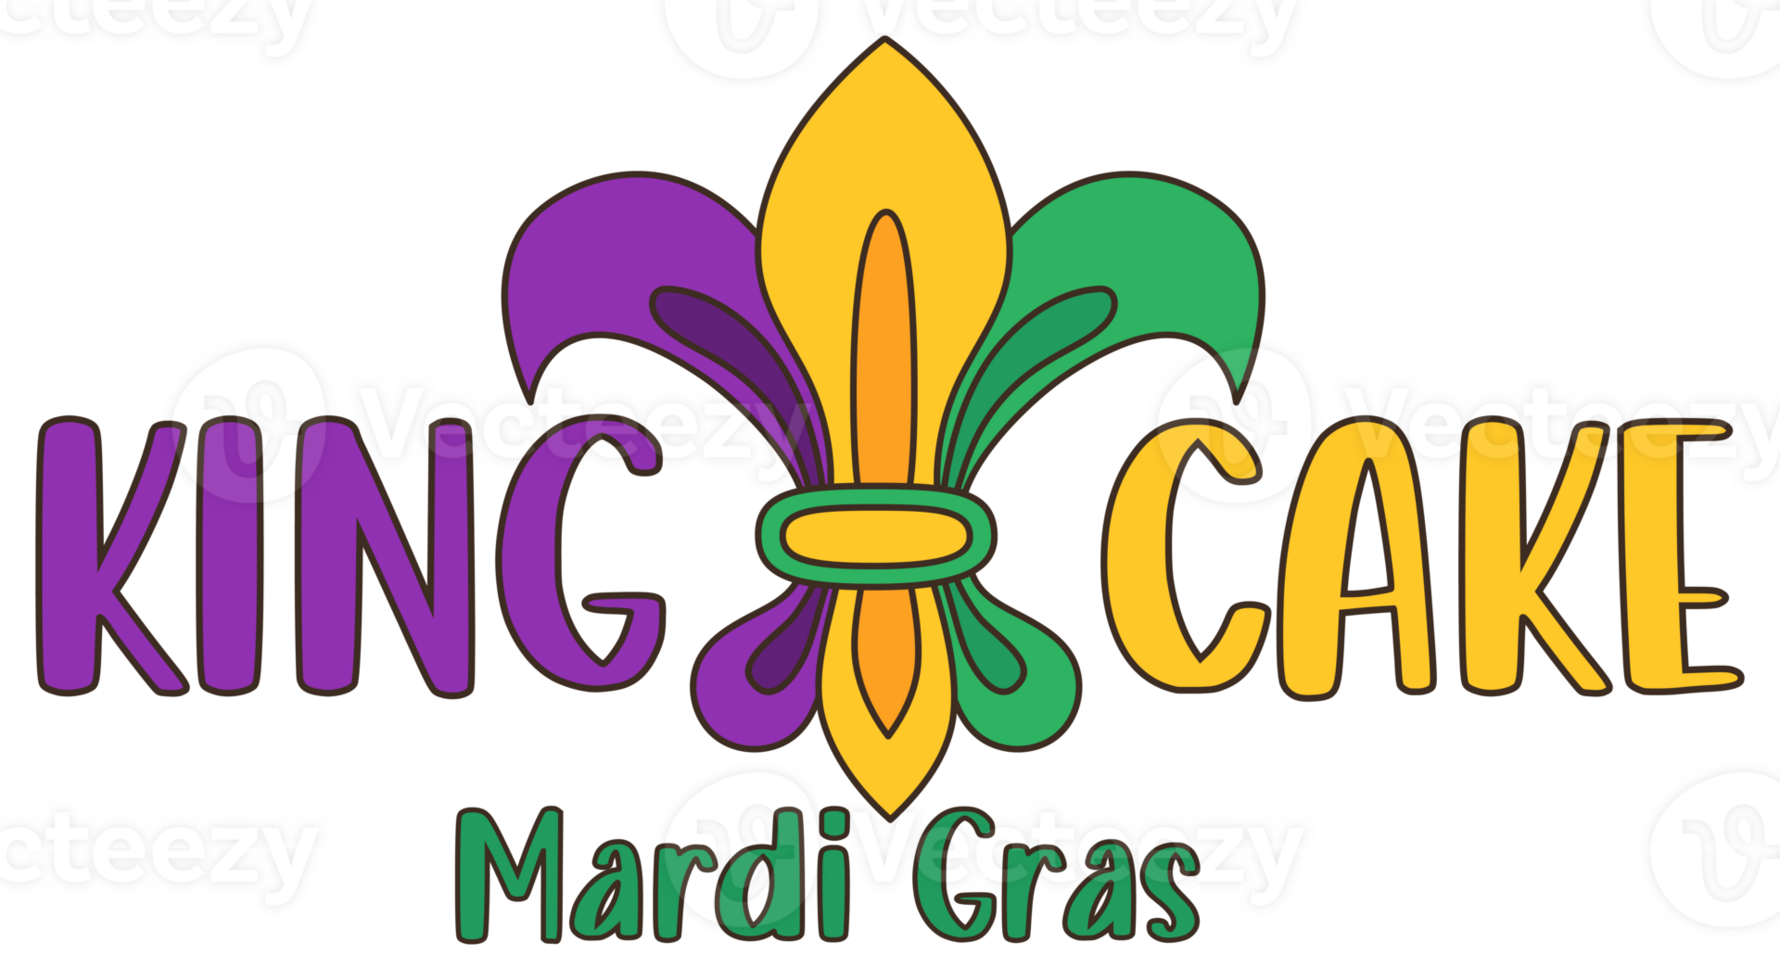 sticker slogan king cake Mardi Gras png